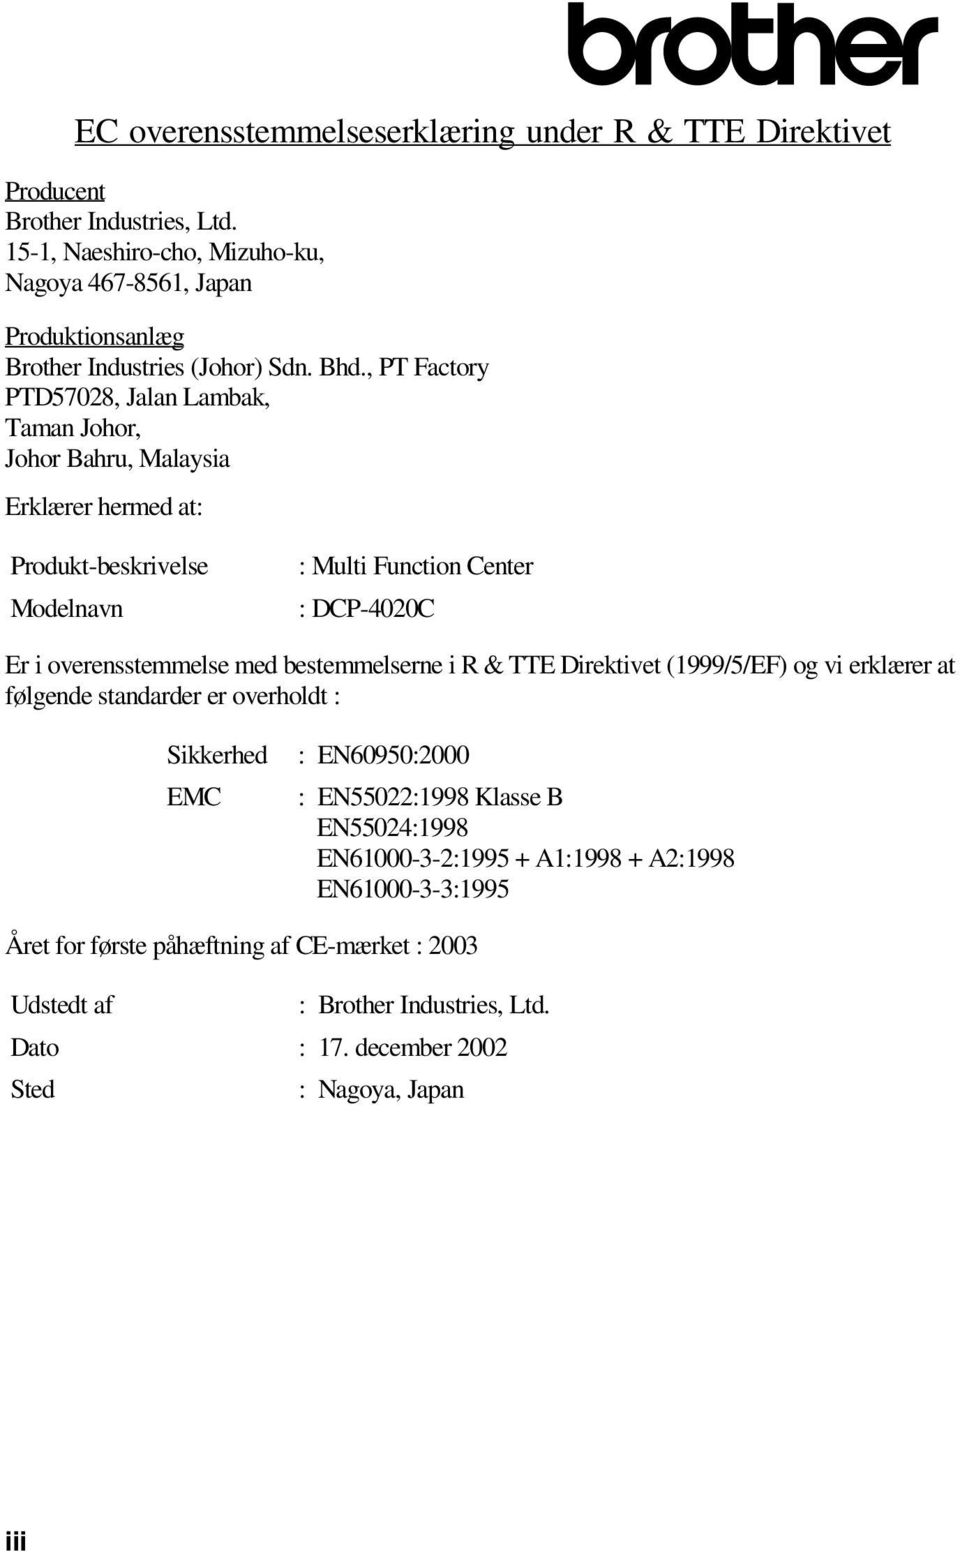 , PT Factory PTD57028, Jalan Lambak, Taman Johor, Johor Bahru, Malaysia Erklærer hermed at: Produkt-beskrivelse Modelnavn : Multi Function Center : DCP-4020C Er i overensstemmelse med